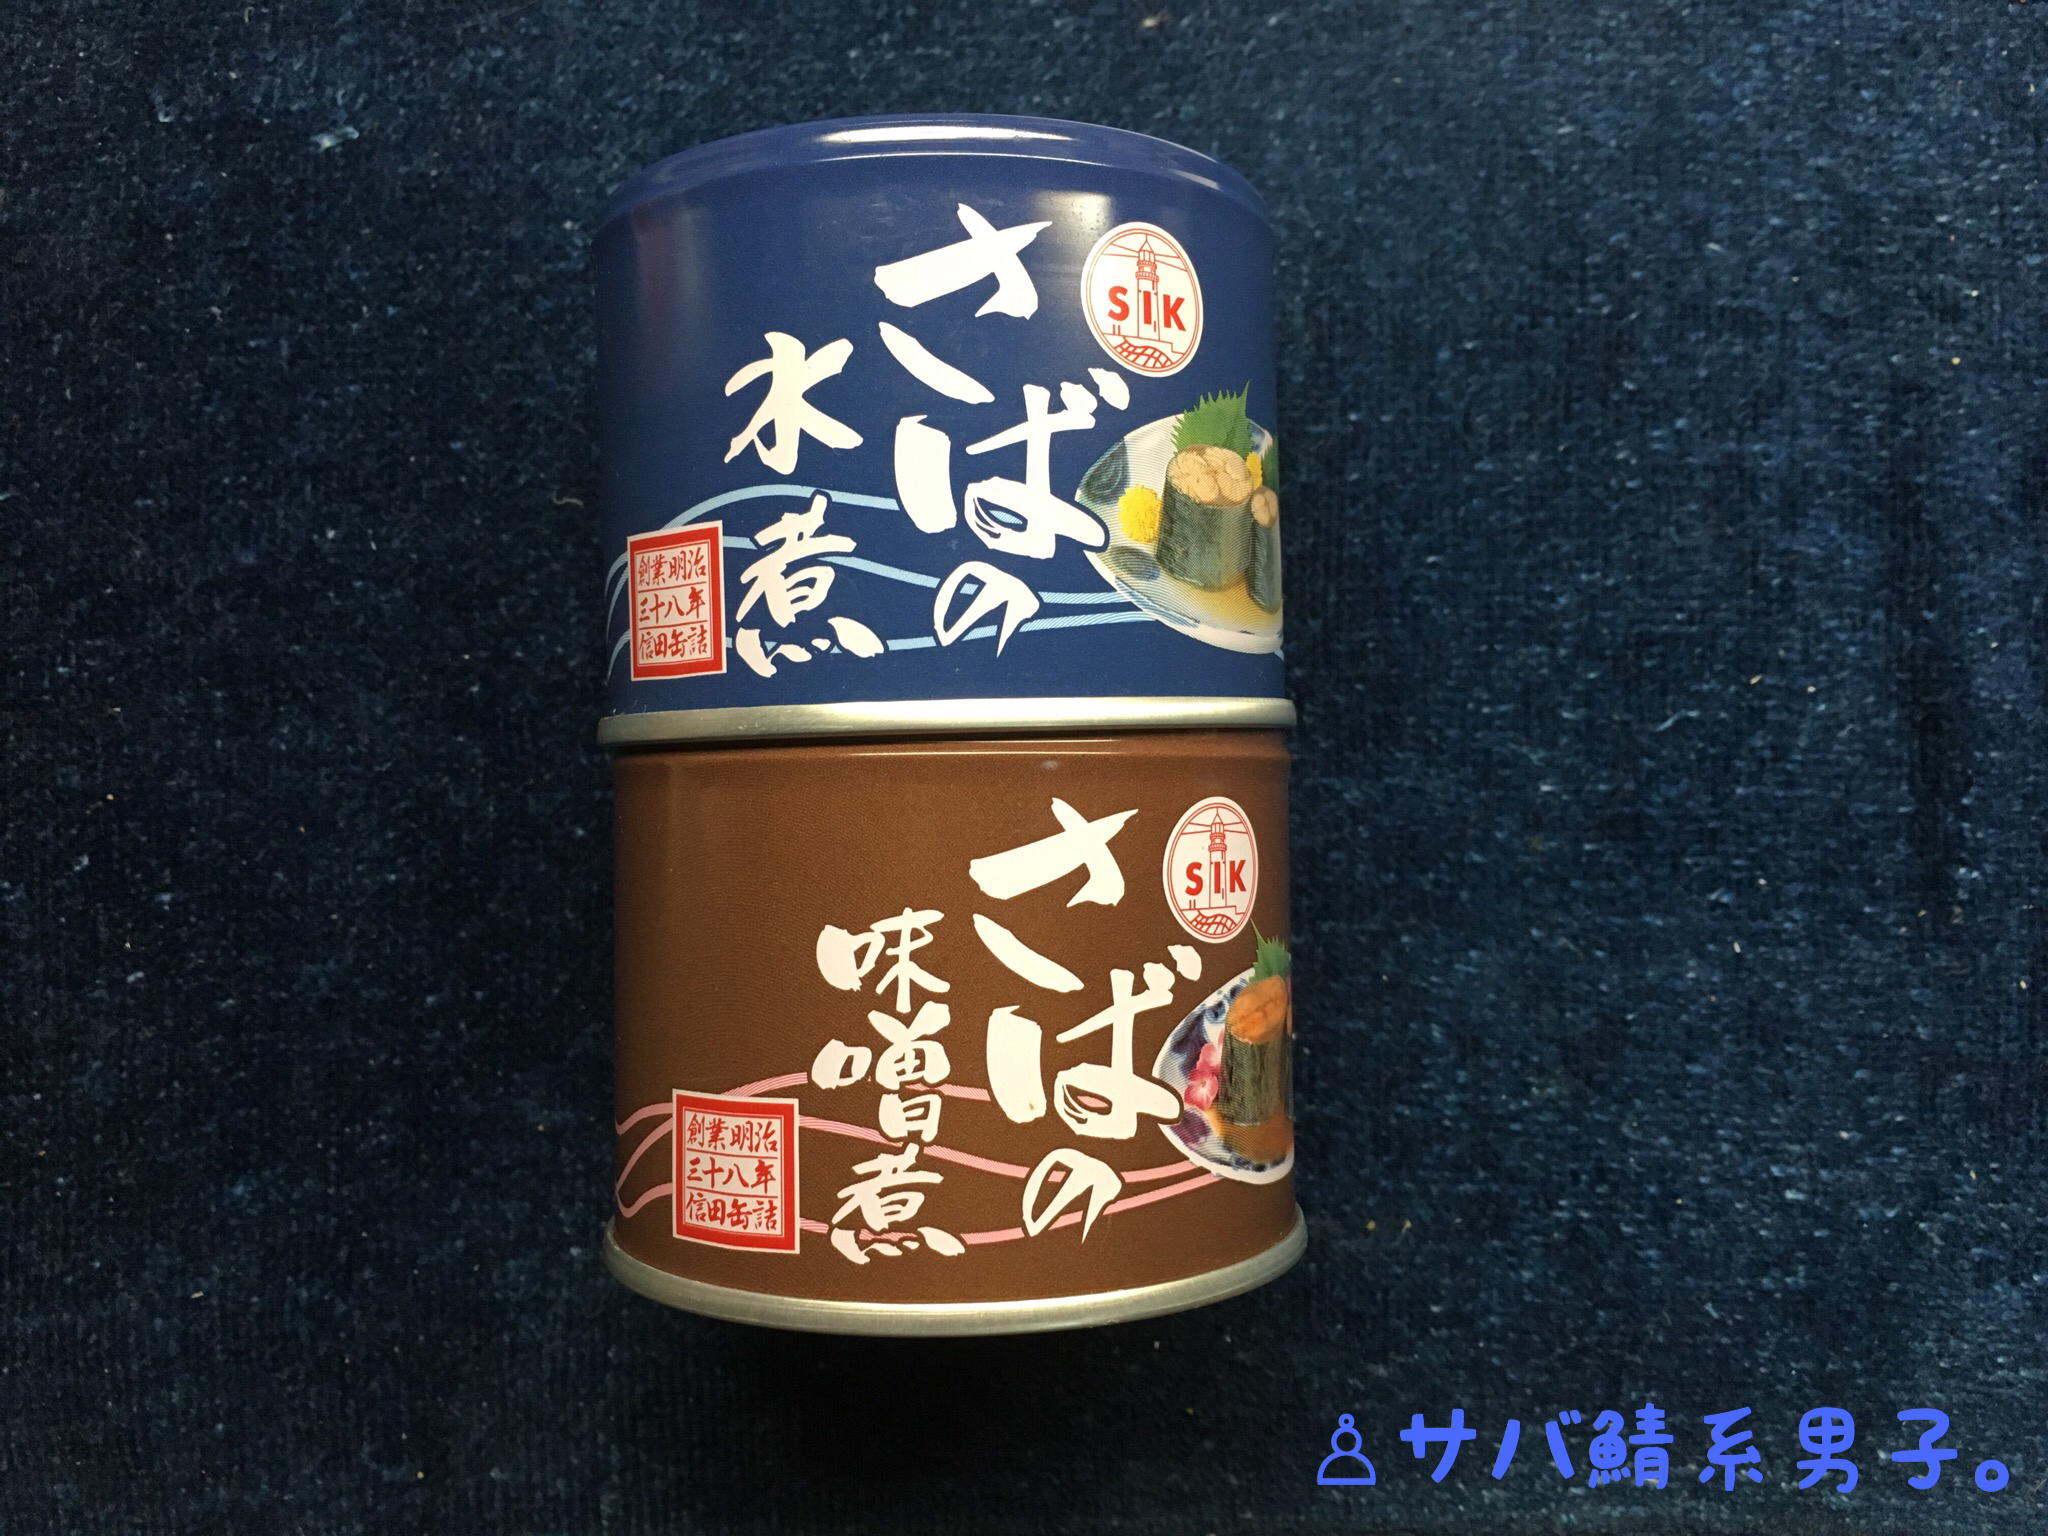 信田缶詰株式会社の鯖缶『SIK さばの水煮、味噌煮』を食レポしてみた。【5つ星評価、味】